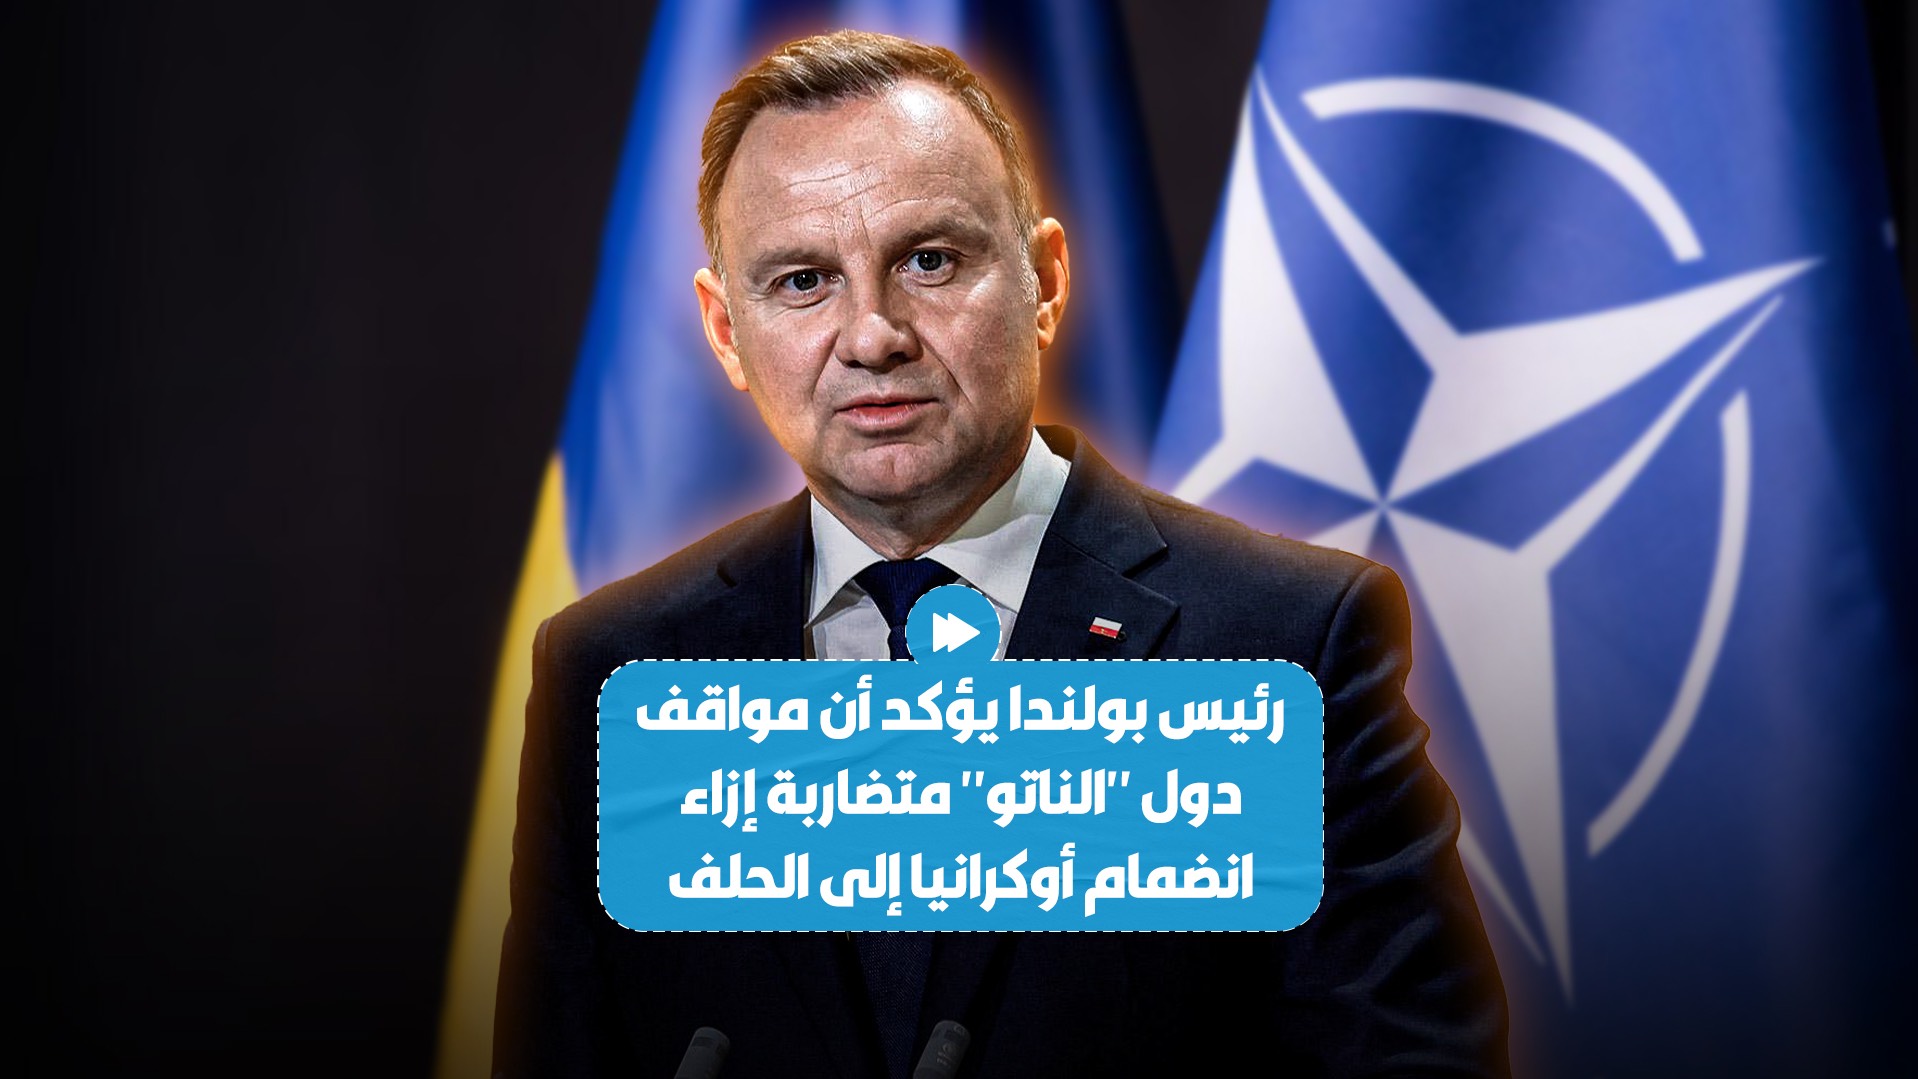 رئيس بولندا يؤكد وجود خلاف بين الدول الأعضاء في "الناتو" حول انضمام أوكرانيا إلى حلف شمال الأطلسي..